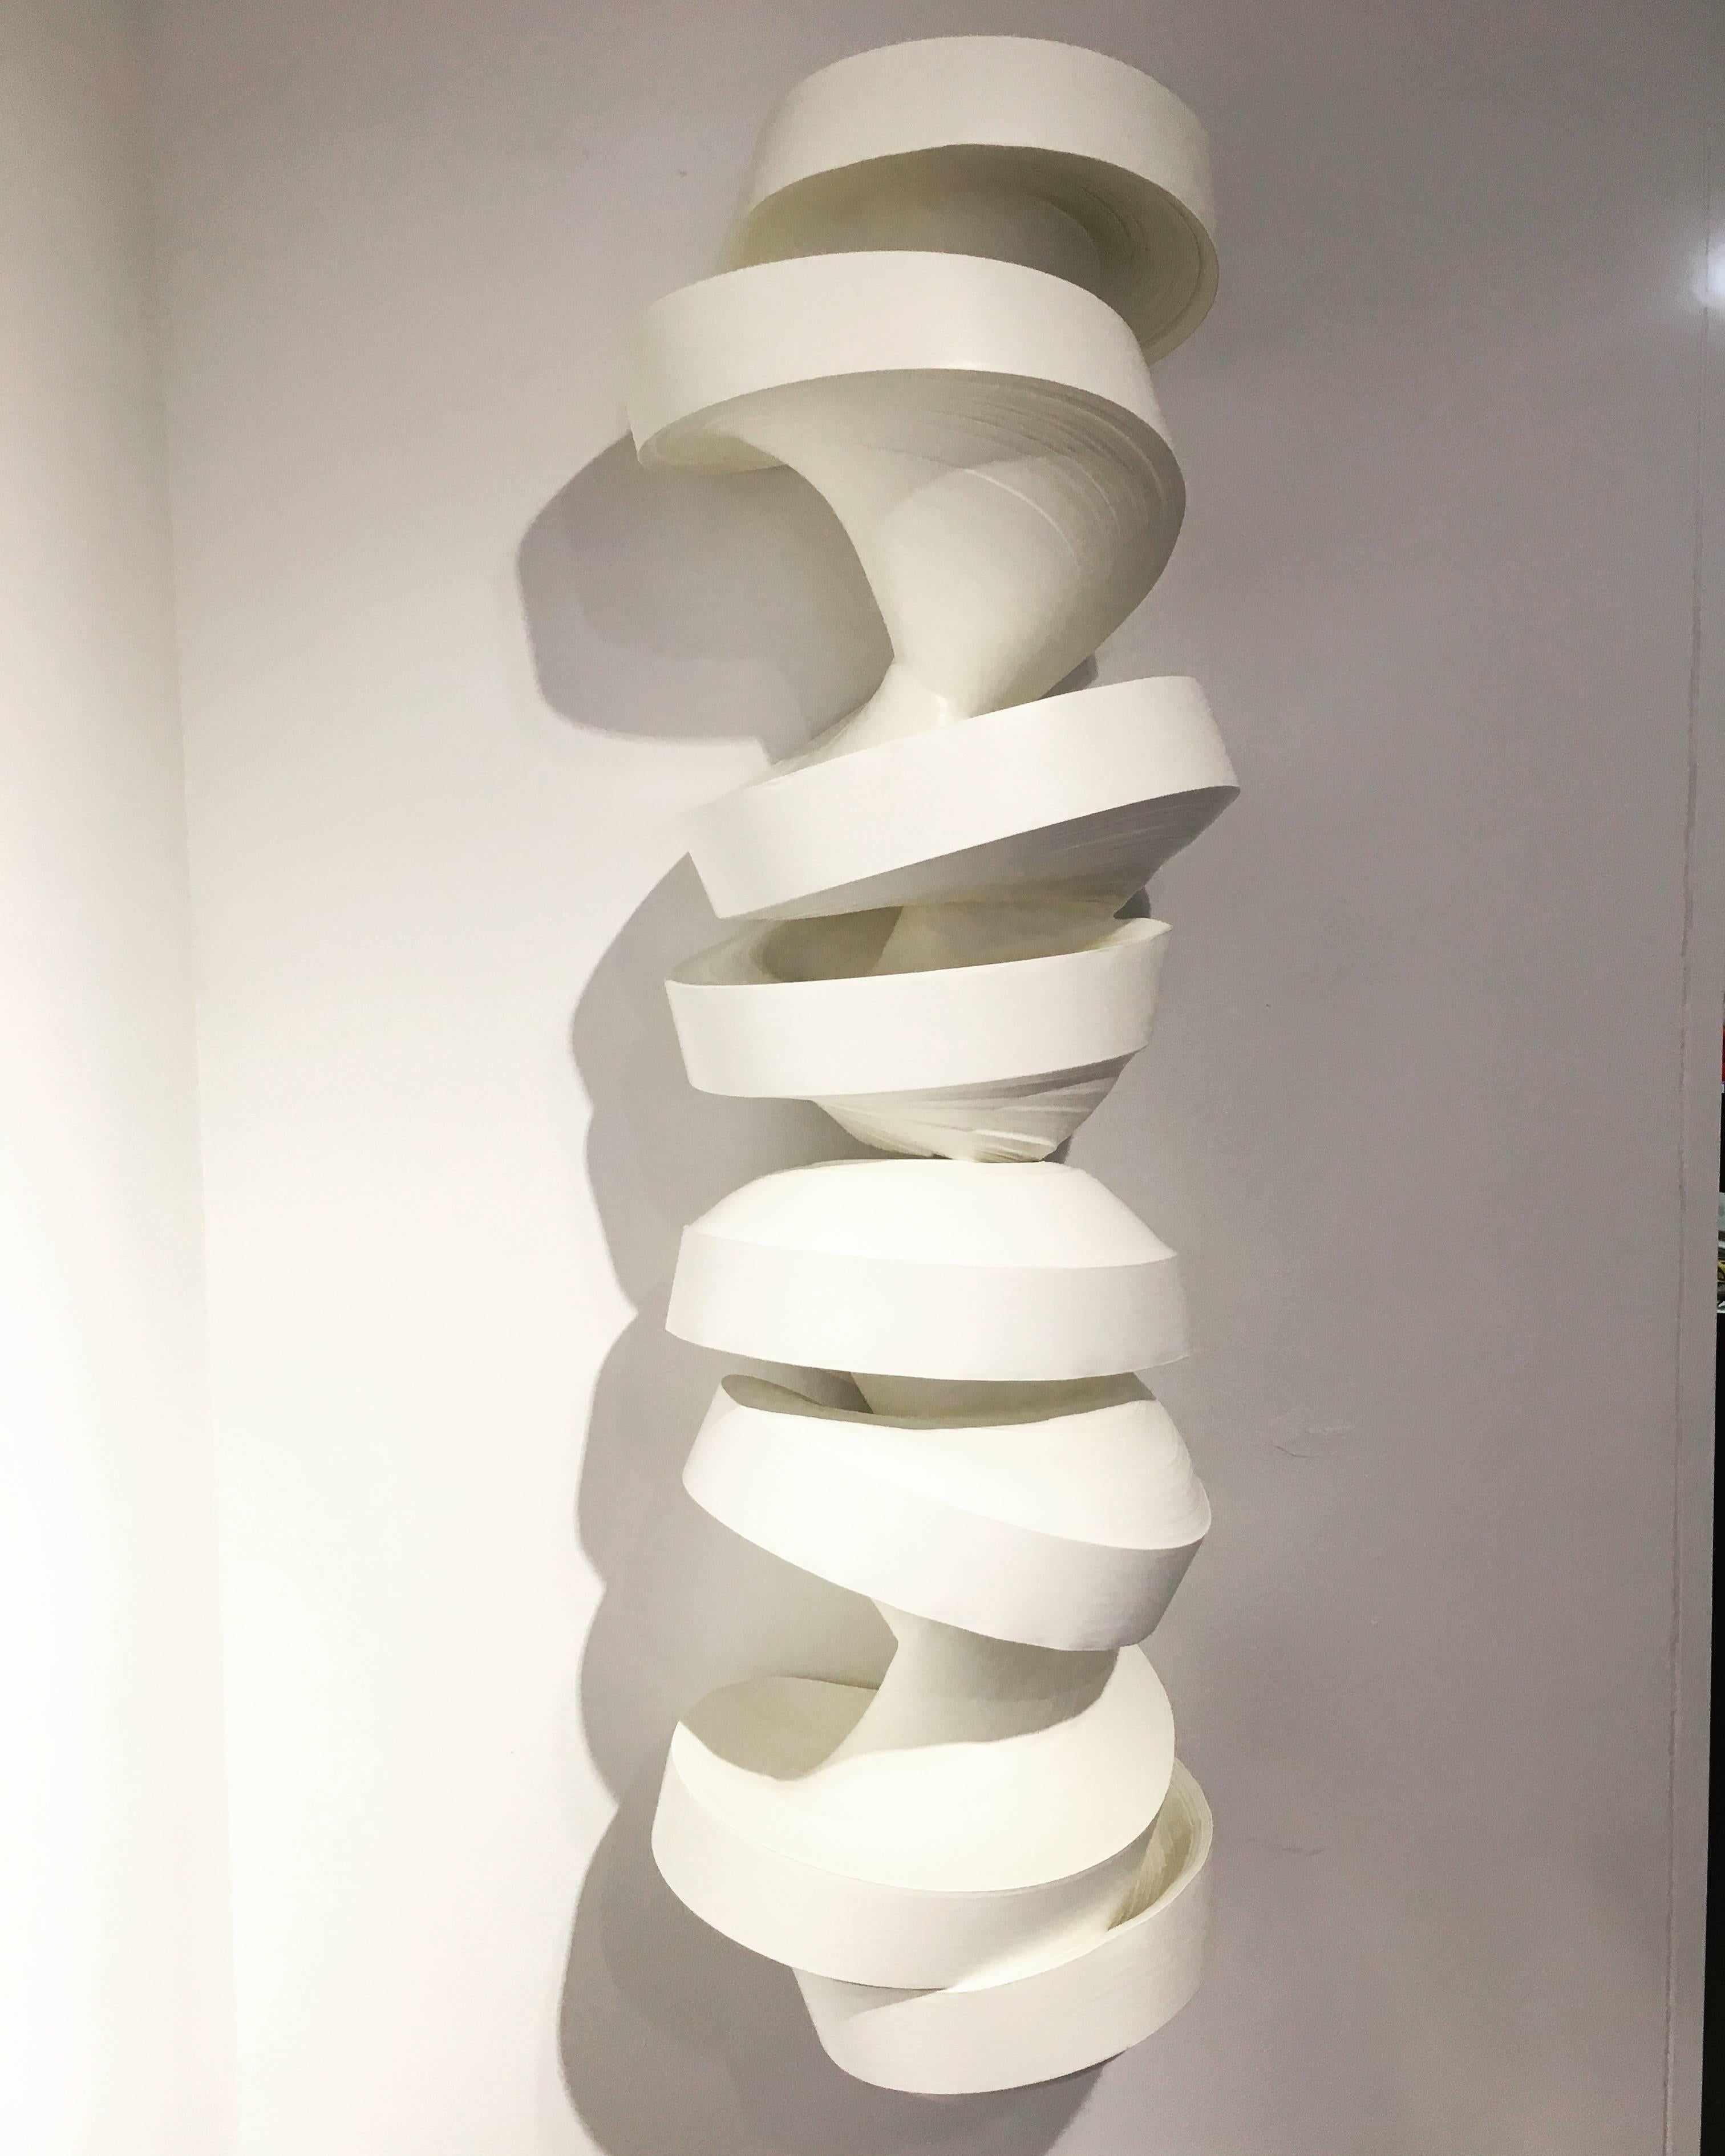 JK780 white- geometric abstract wall sculpture - Sculpture by Jae Ko